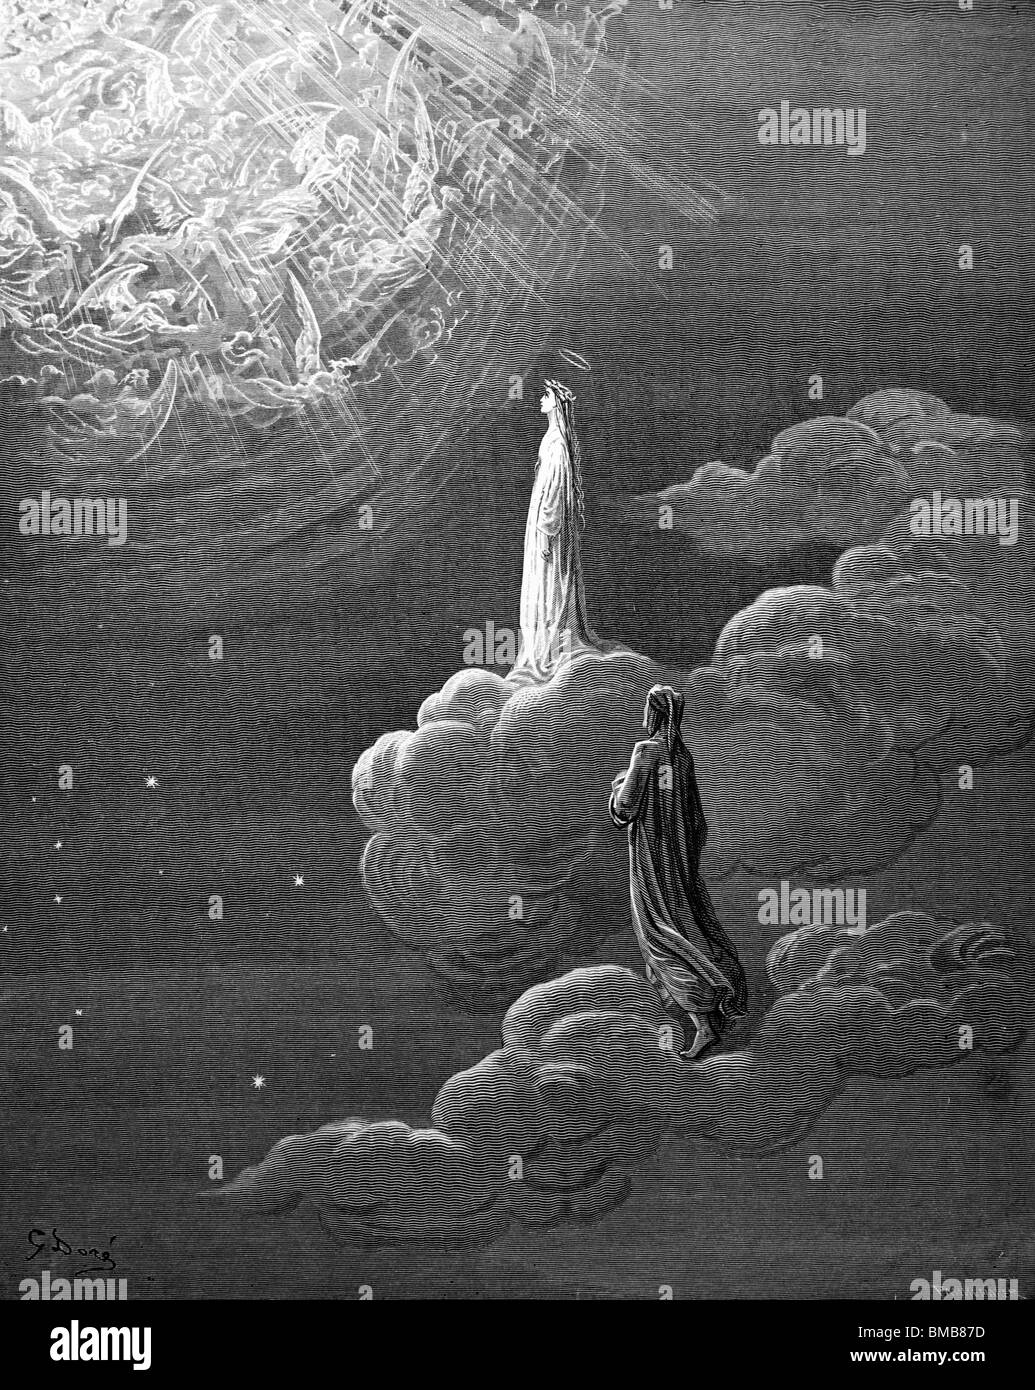 Gravure de Gustave Doré de la Divine Comédie de Dante Alighieri, Dante et Béatrice témoin les esprits dans la sphère de Mars Banque D'Images